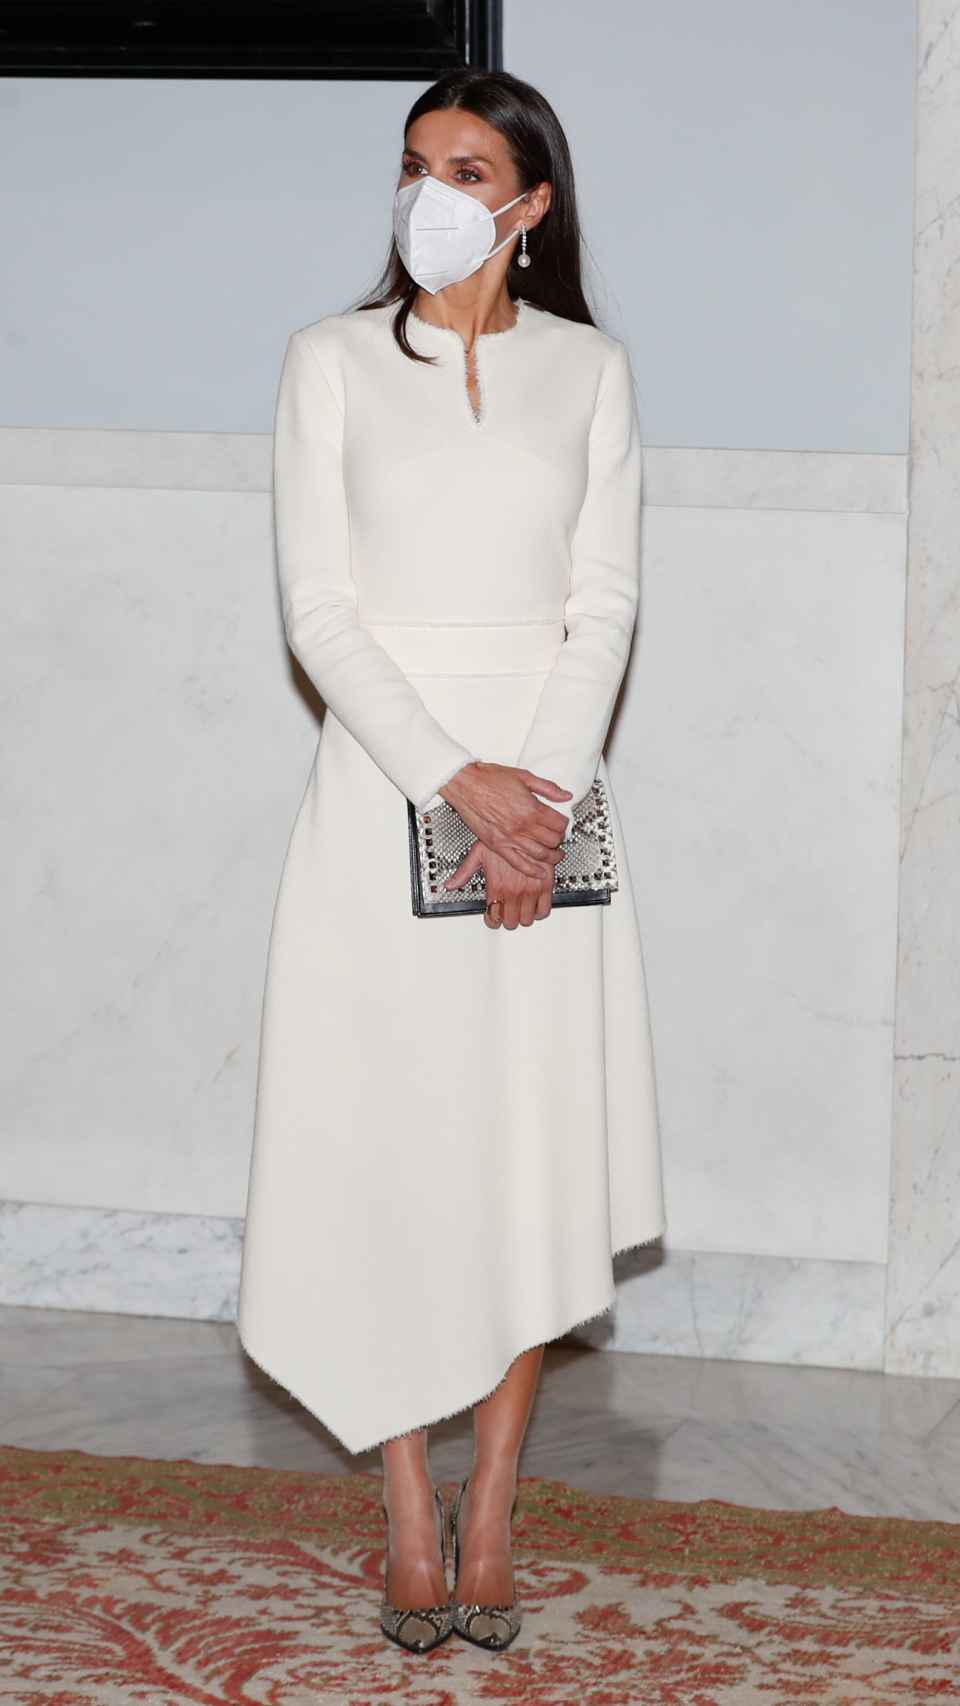 La reina Letizia ha lucido vestido blanco, perlas y diamantes.